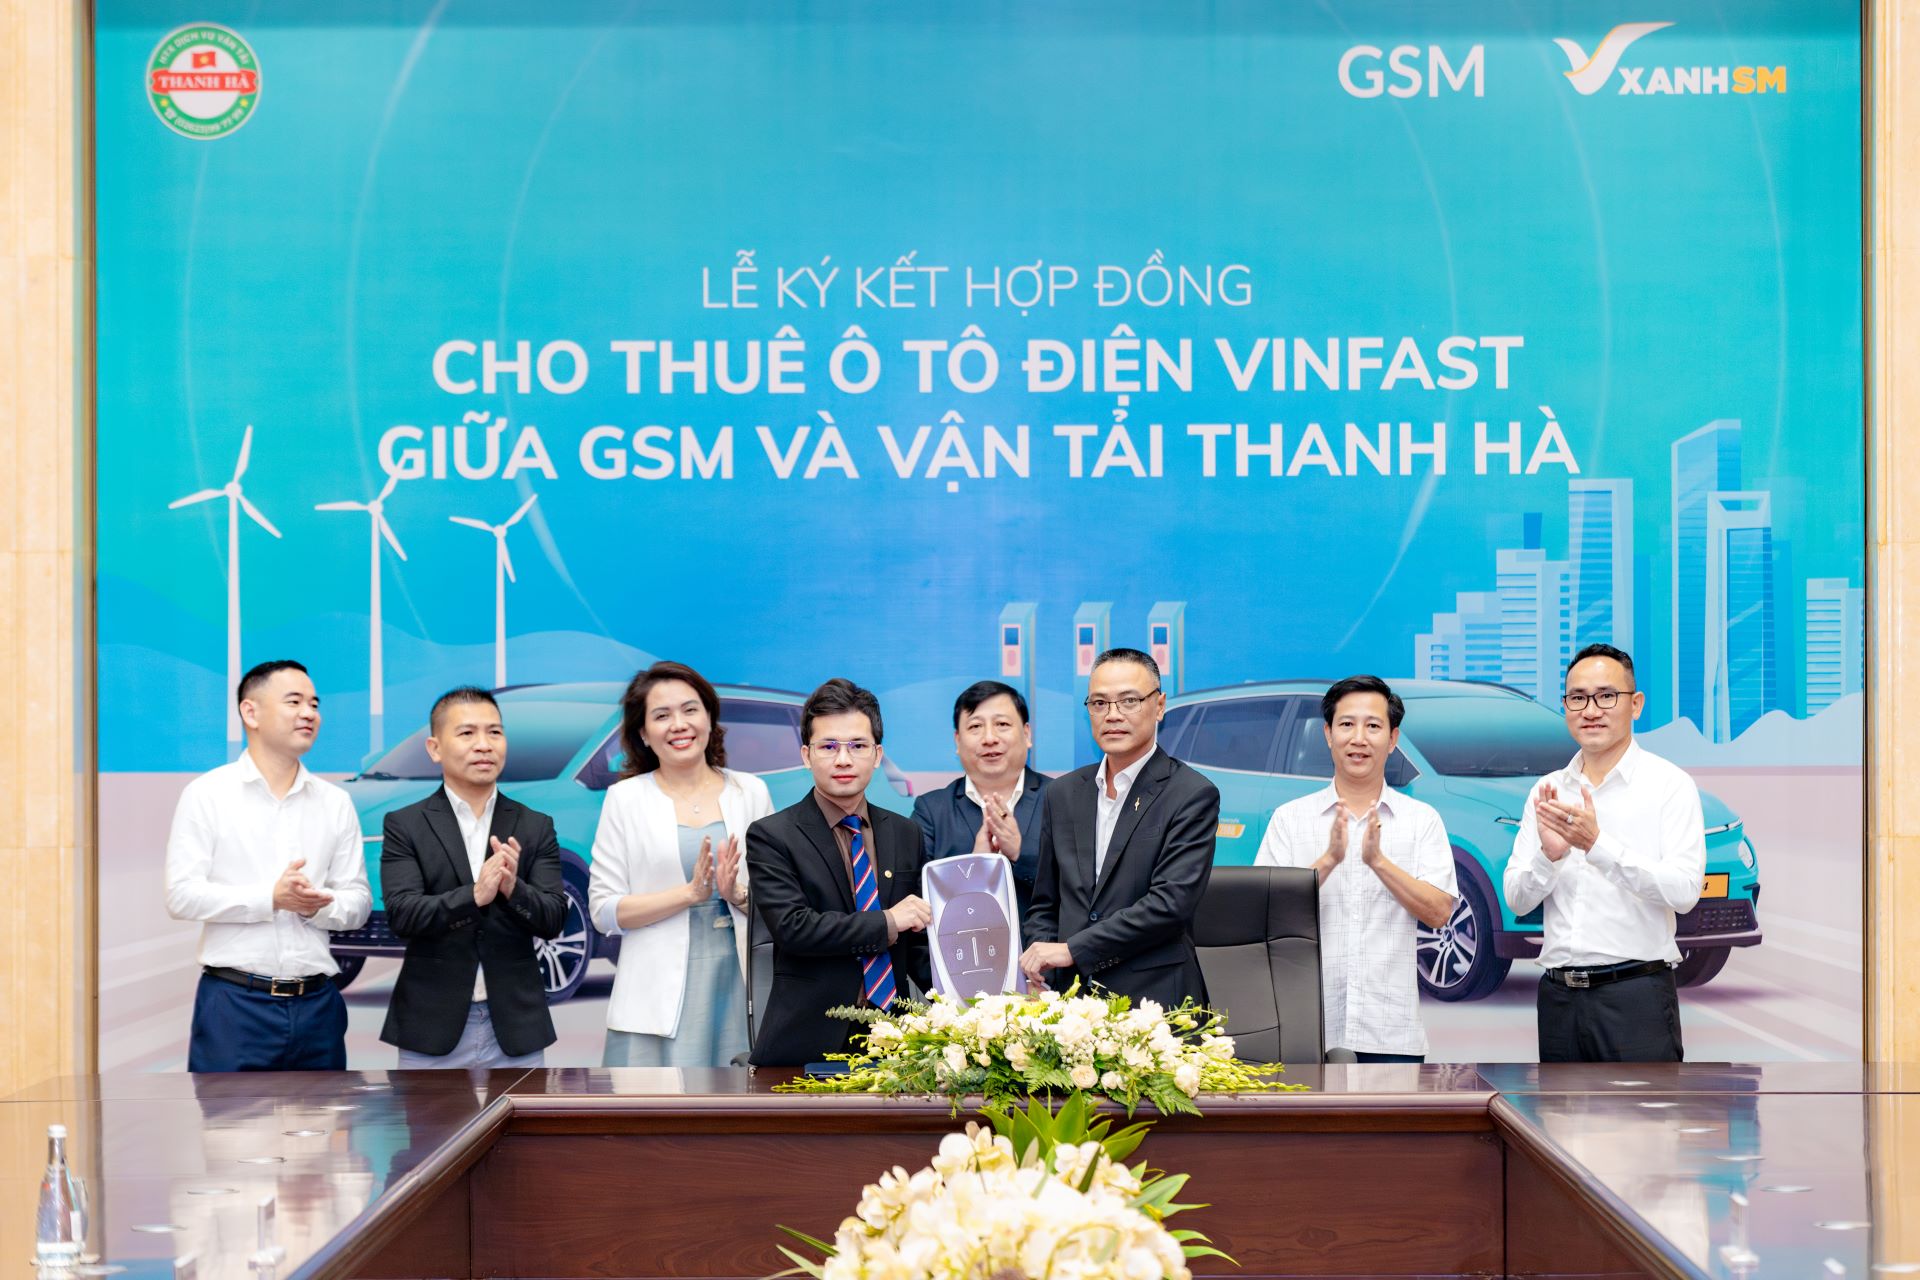 Hợp tác xã Vận tải Thanh Hà 250 xe ô tô điện VinFast từ GSM để cung cấp dịch vụ taxi điện tại Đắk Lắk - Ảnh 1.